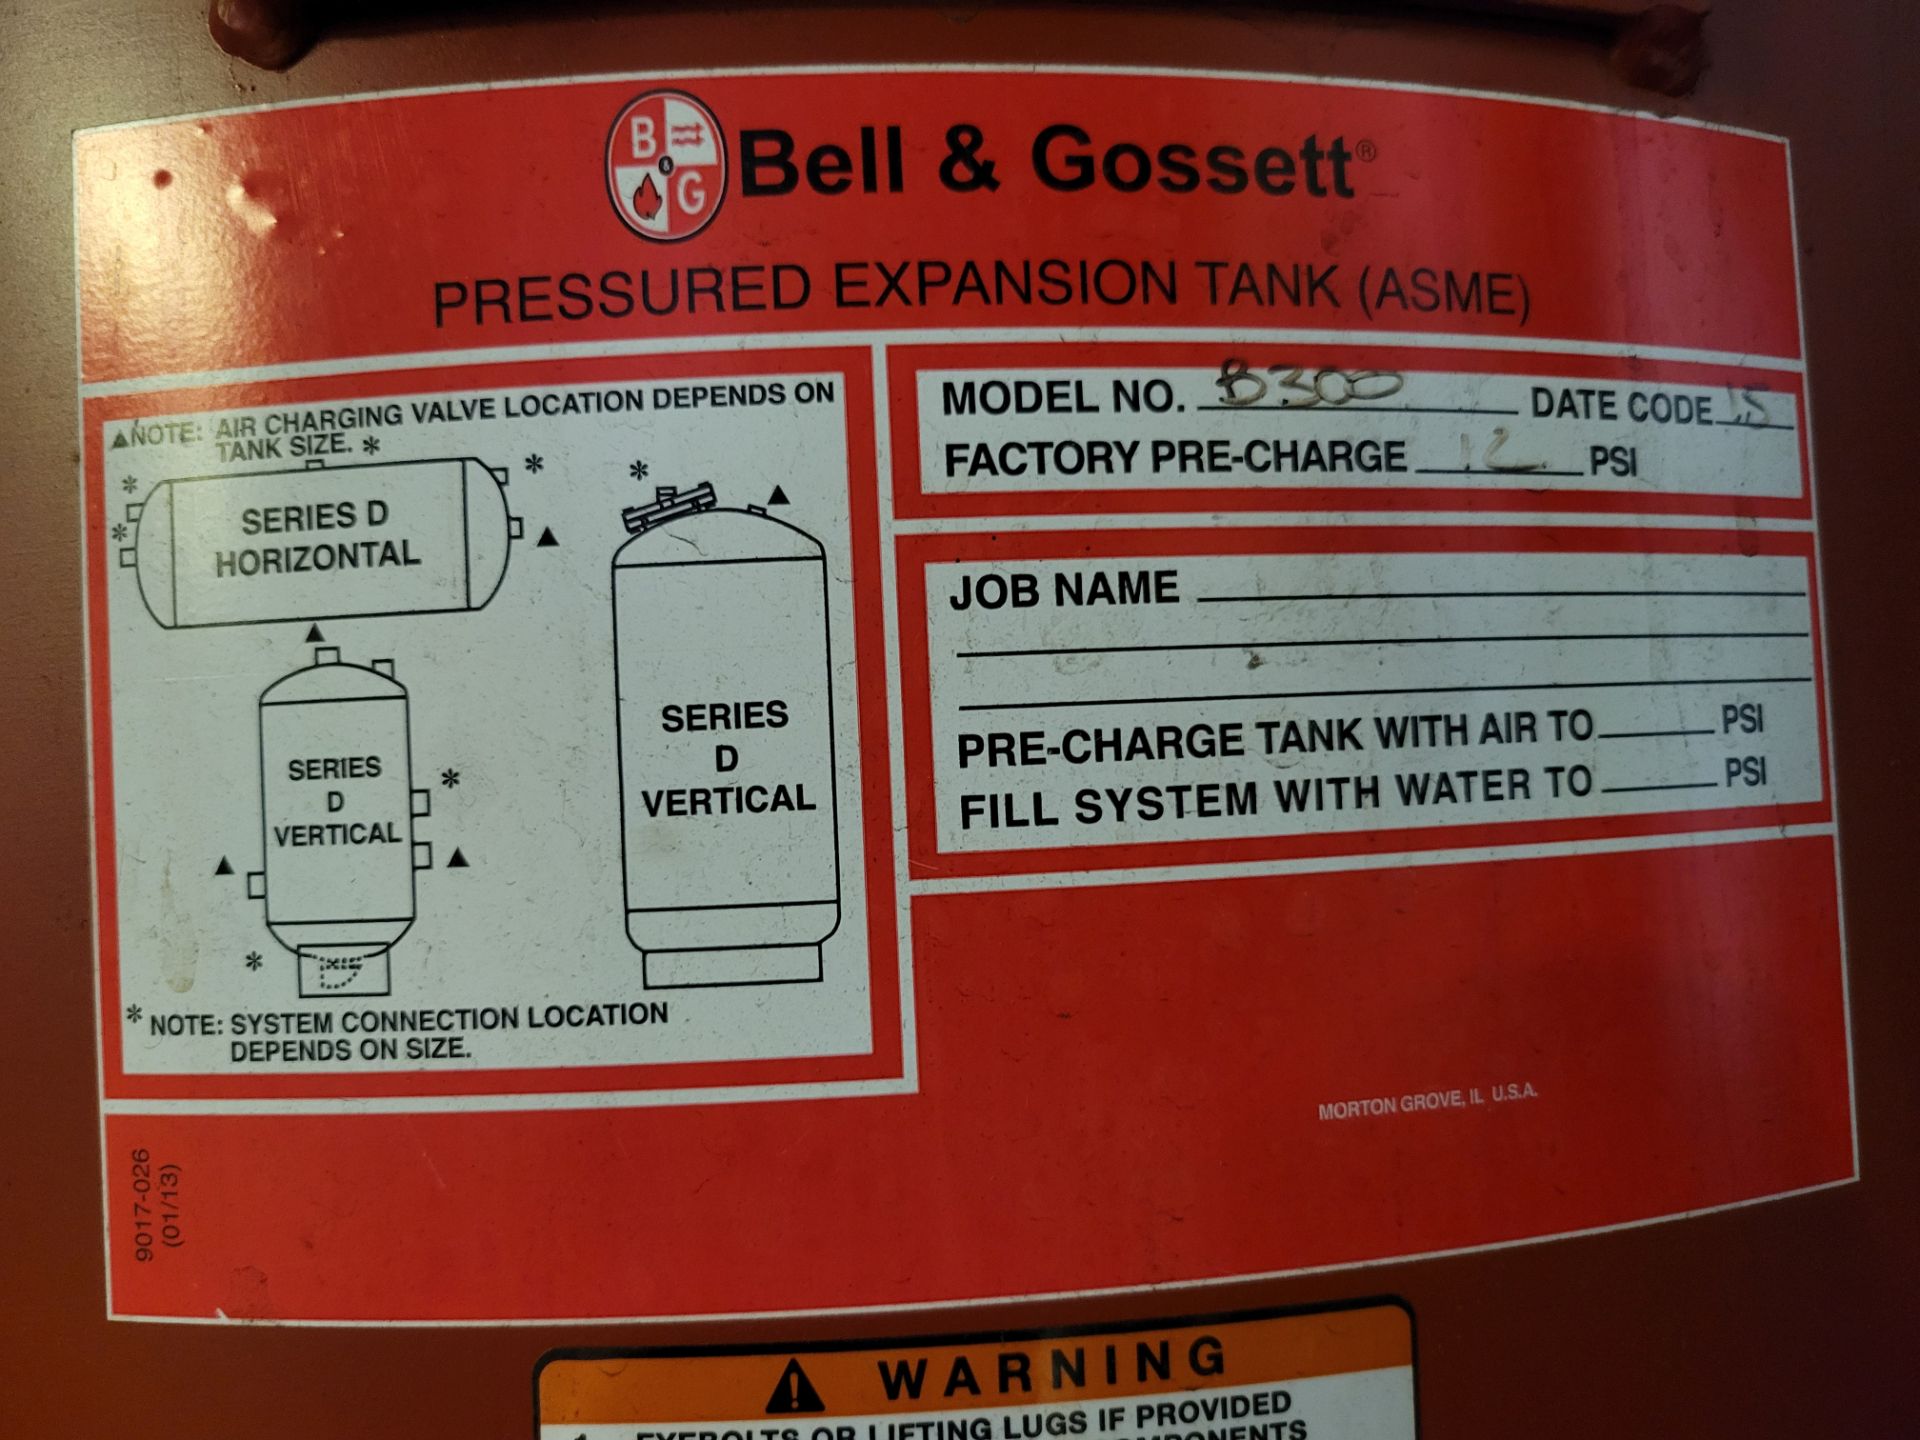 Bell & Gossett Pressured Expansion Tank - Image 3 of 3